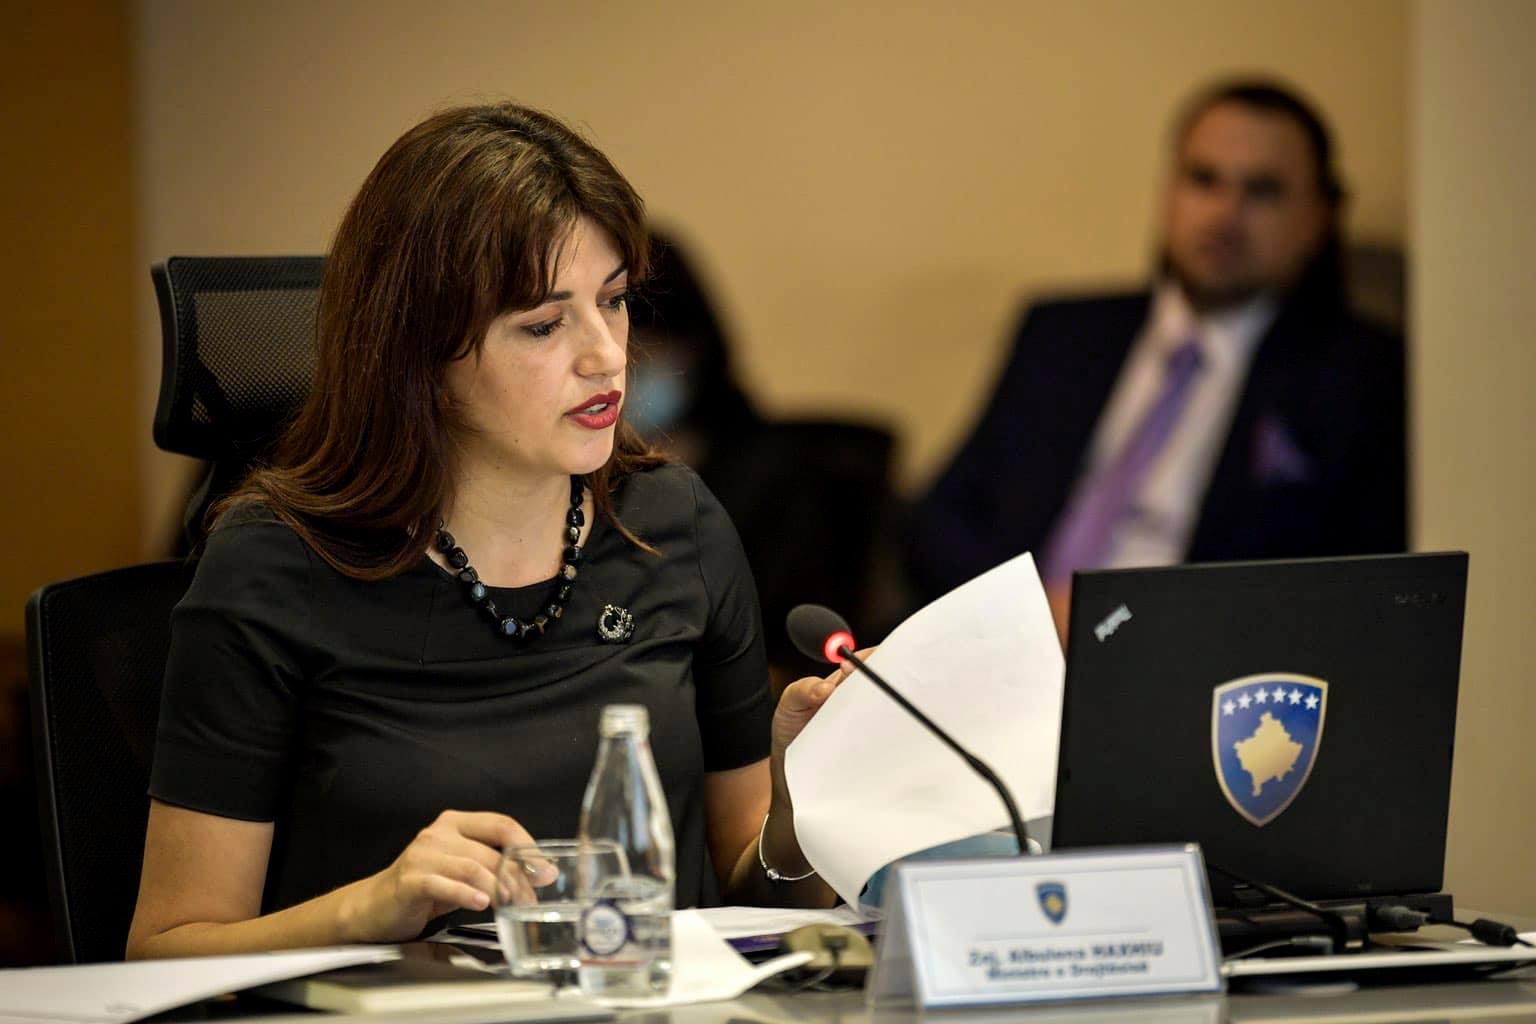 Ministrja Haxhiu bën thirrje grave për raportim të hershëm të dhunës në familje